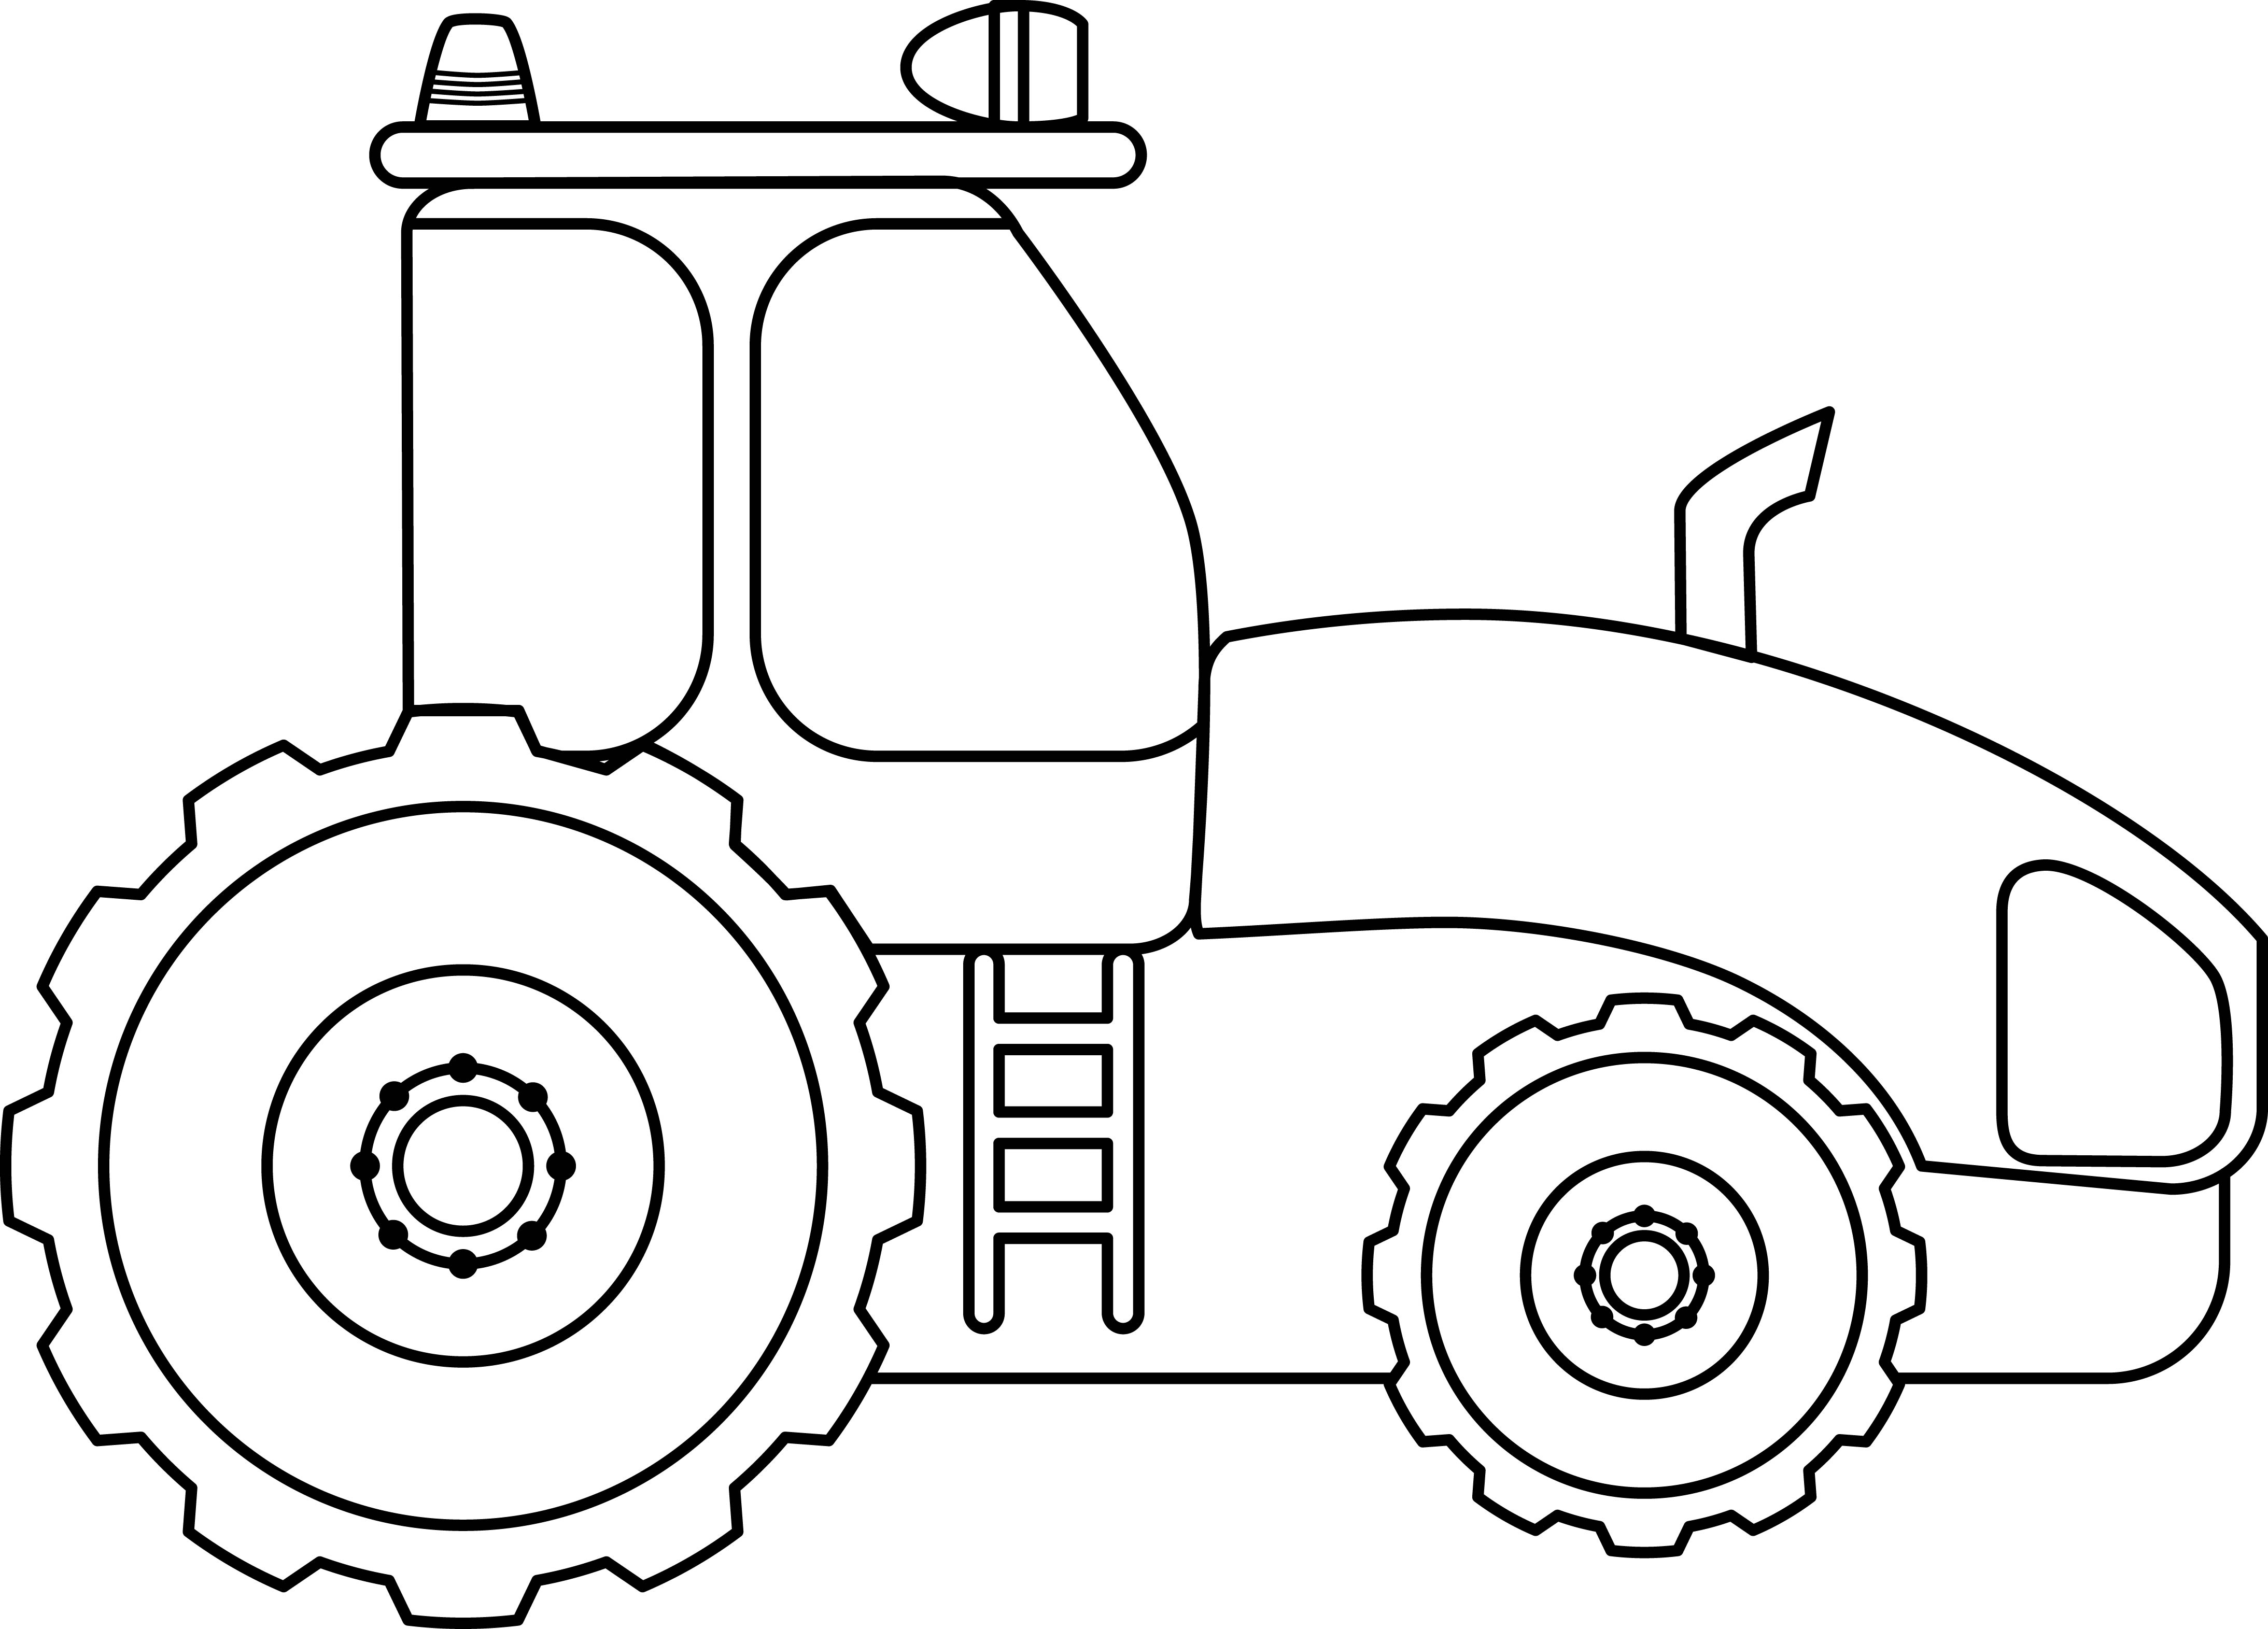 Раскраска строительный трактор с прожектором на крыше формата А4 в высоком качестве